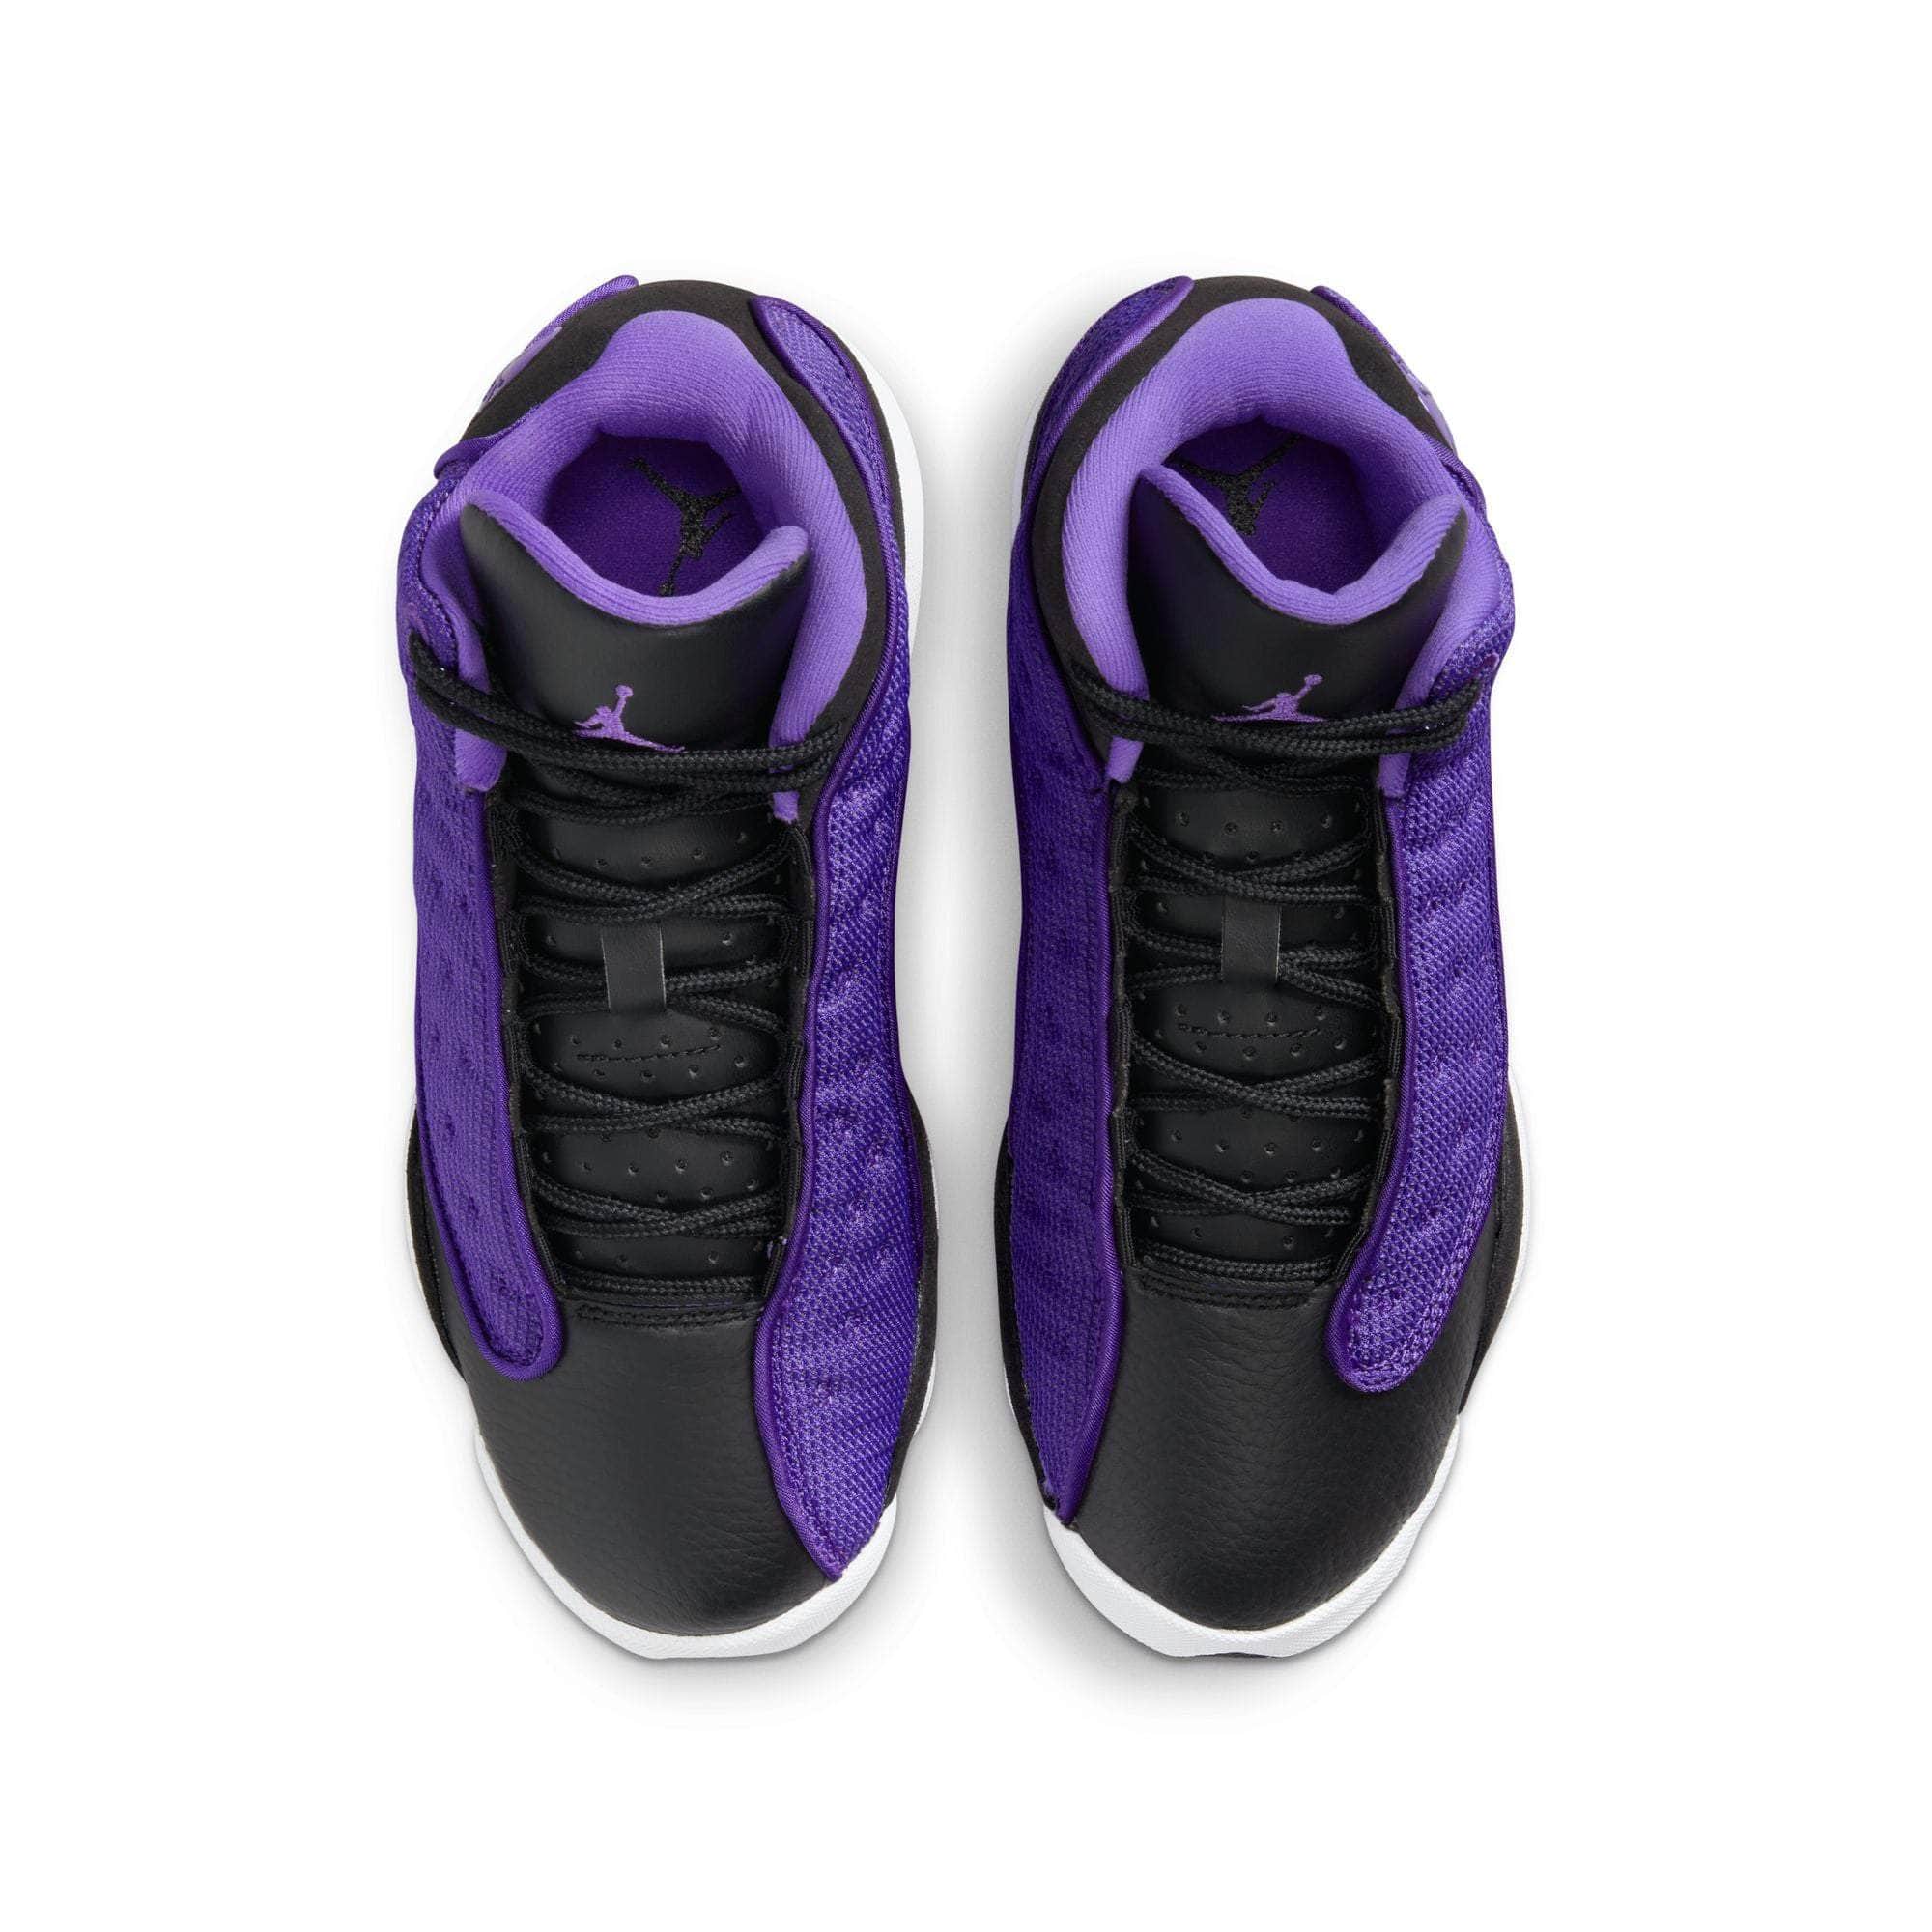 Air Jordan 13 Retro Lakers Men's Shoe - White/Black/Court Purple/University Gold - 13